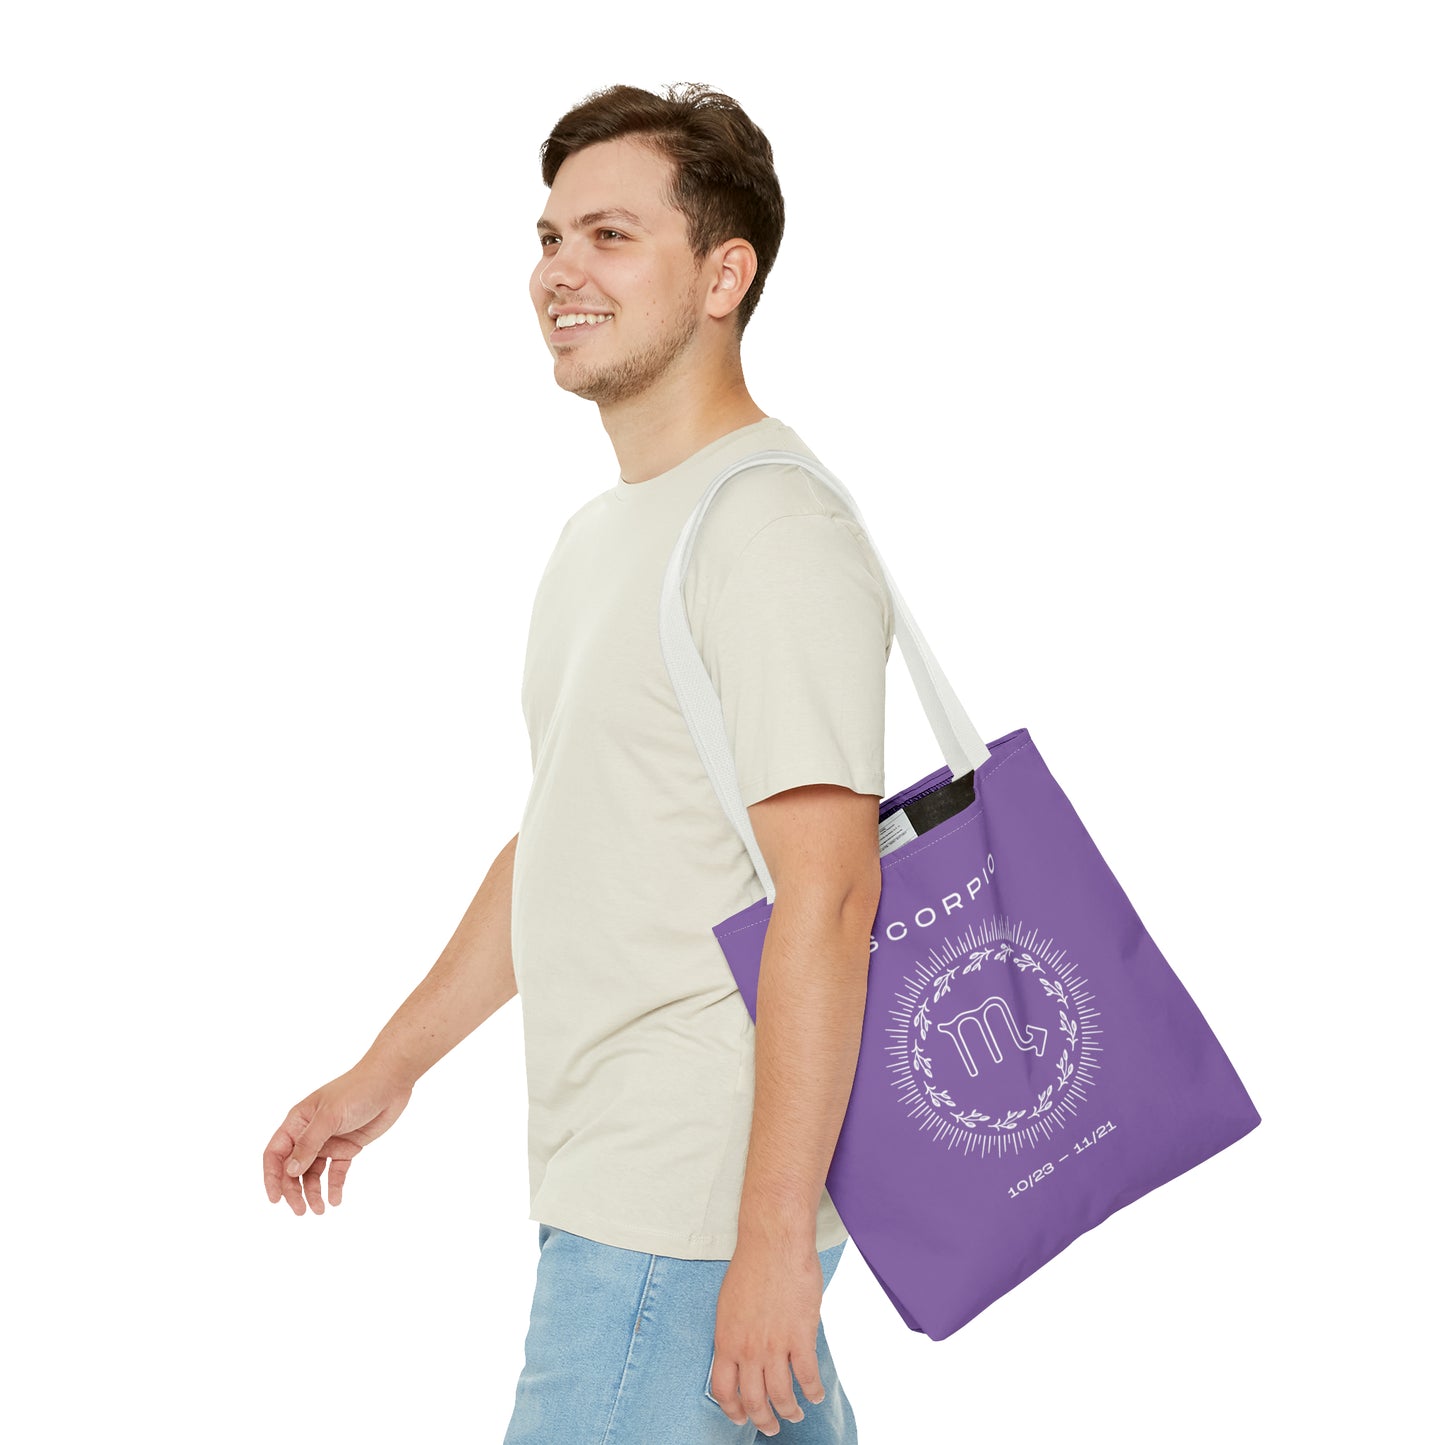 Scorpio Tote Bag, Purple